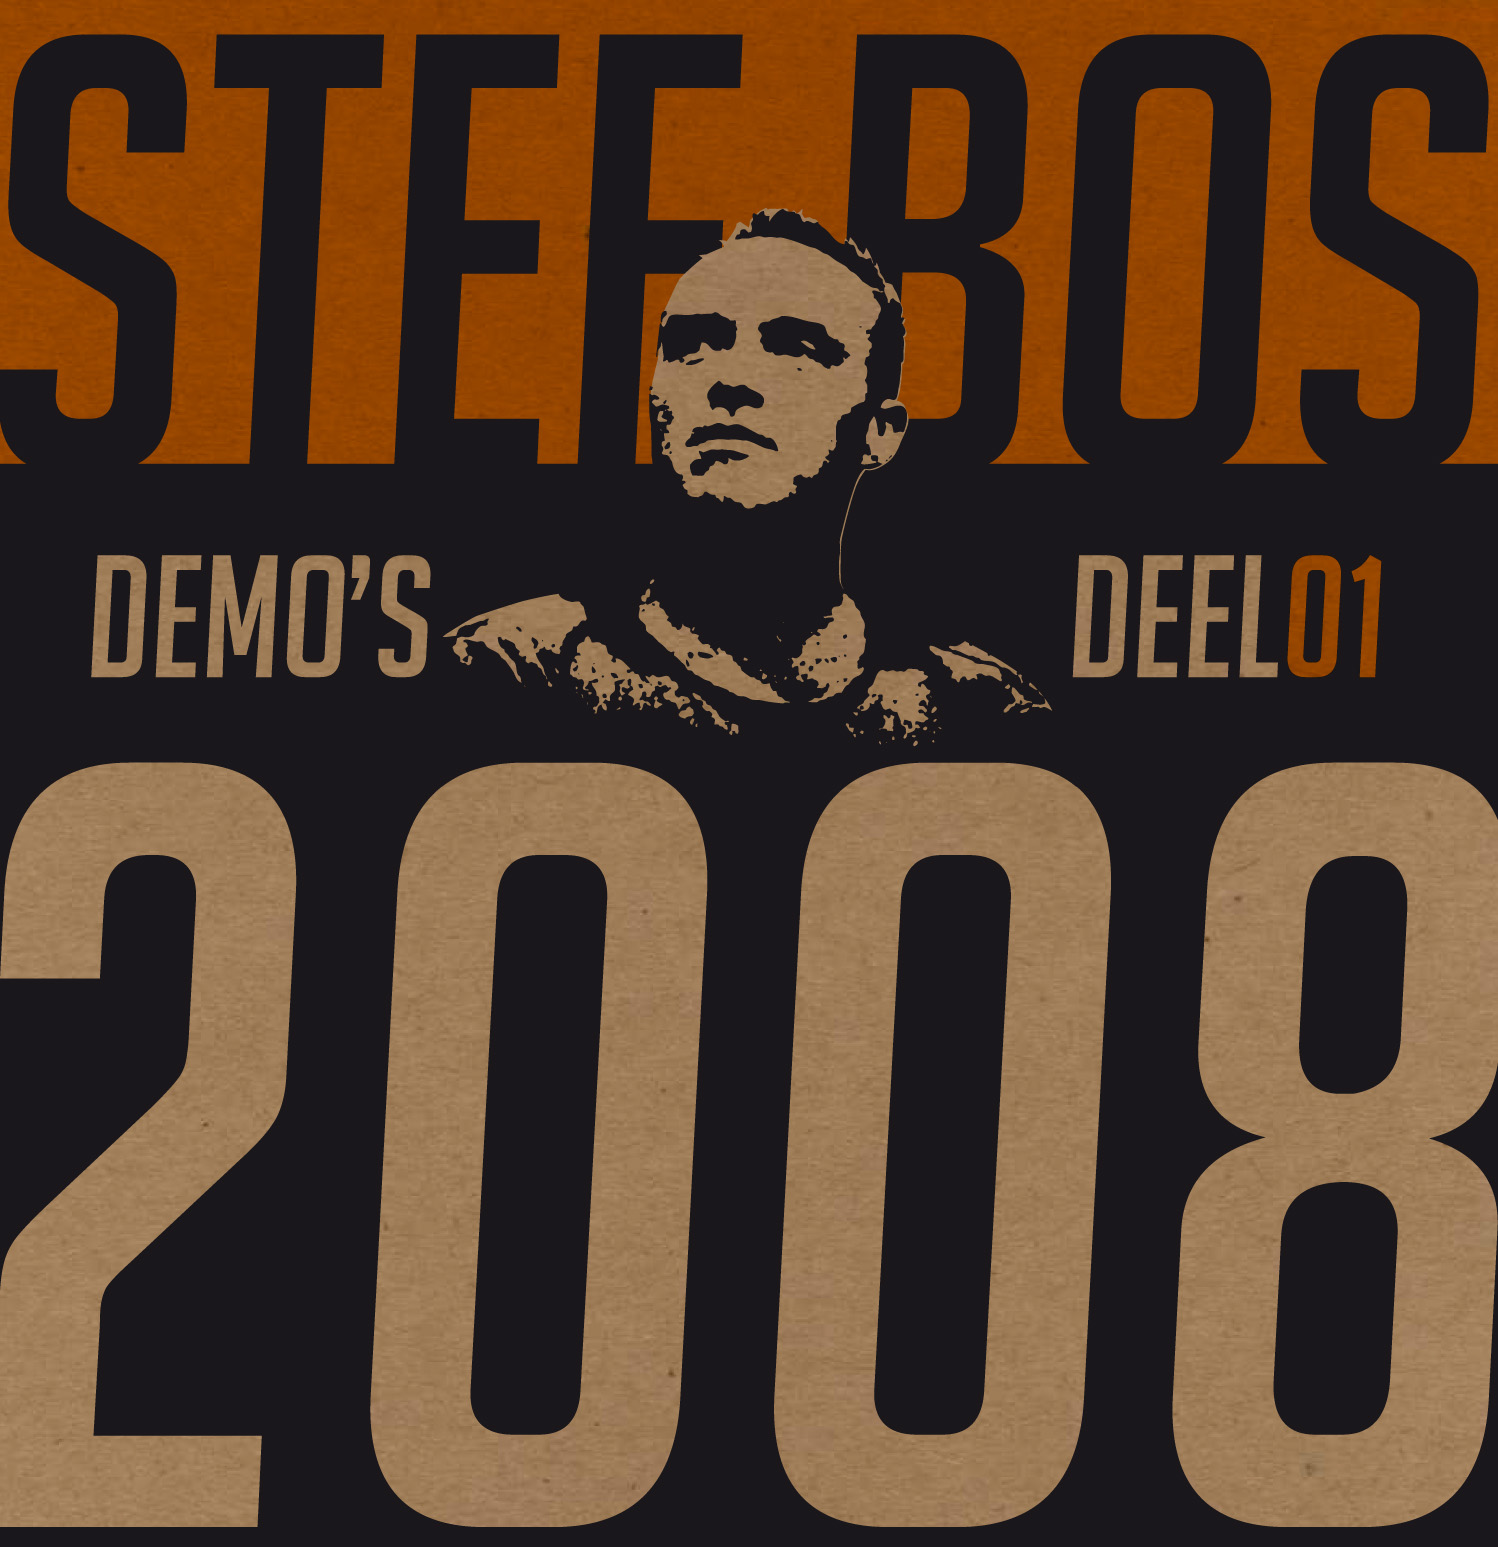 Demo's 2008 Deel 01